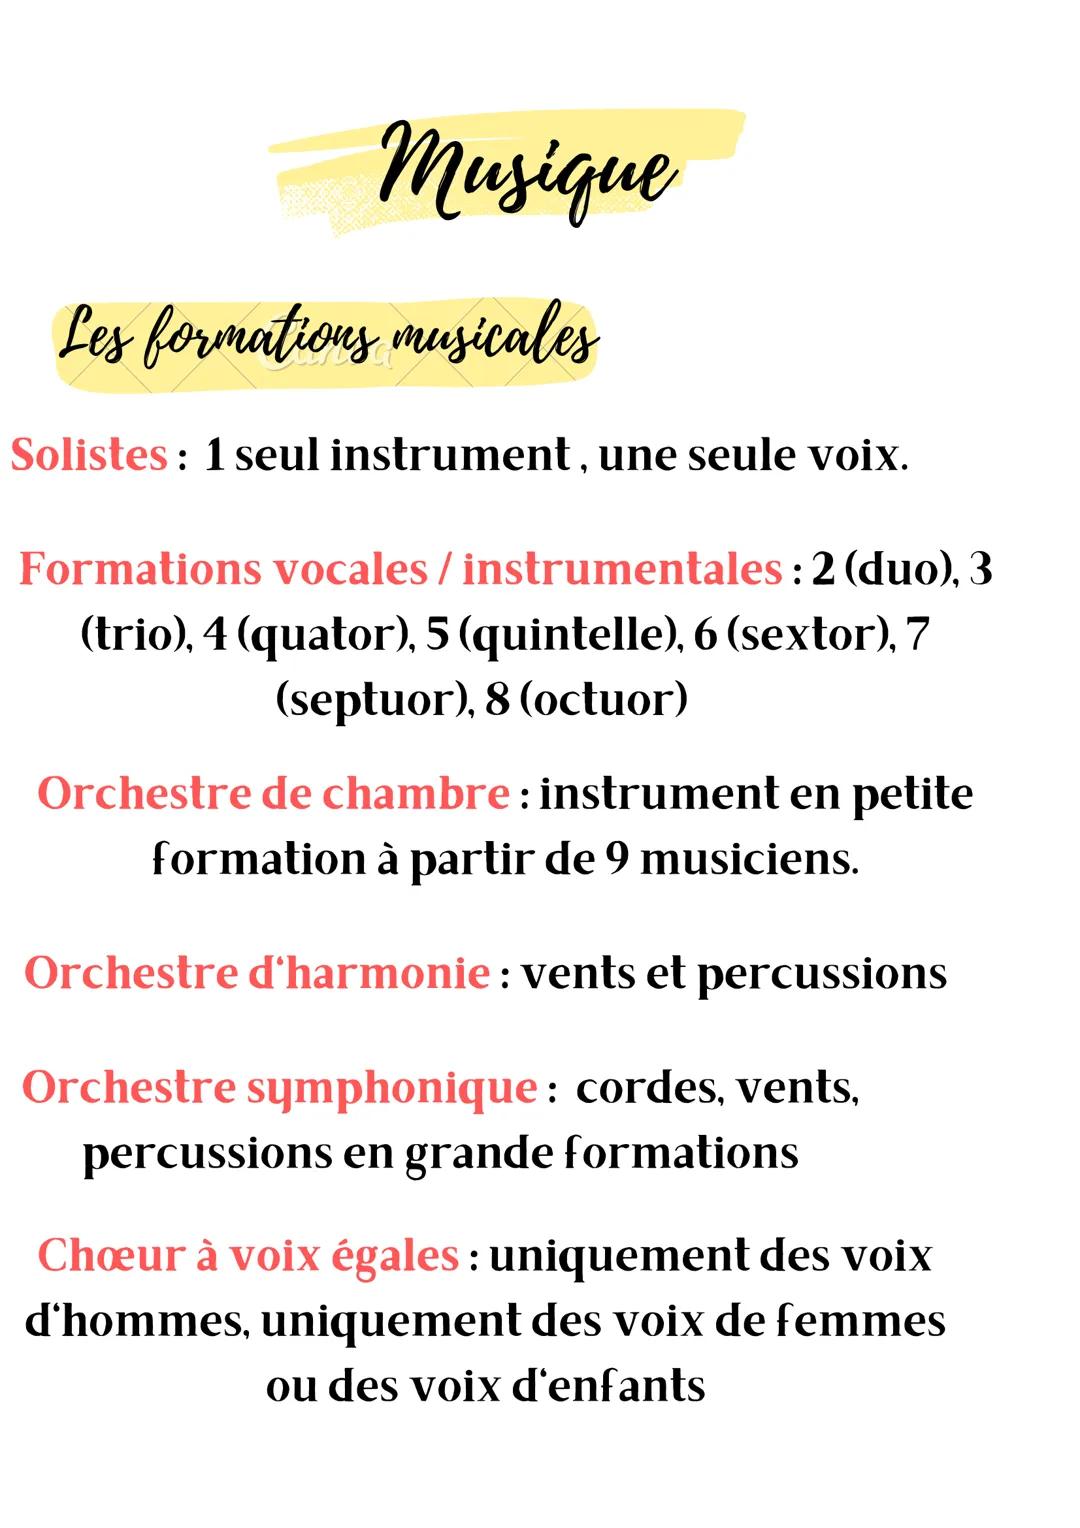 Musique
Les formations musicales
Solistes: 1 seul instrument, une seule voix.
Formations vocales / instrumentales : 2 (duo), 3
(trio), 4 (qu